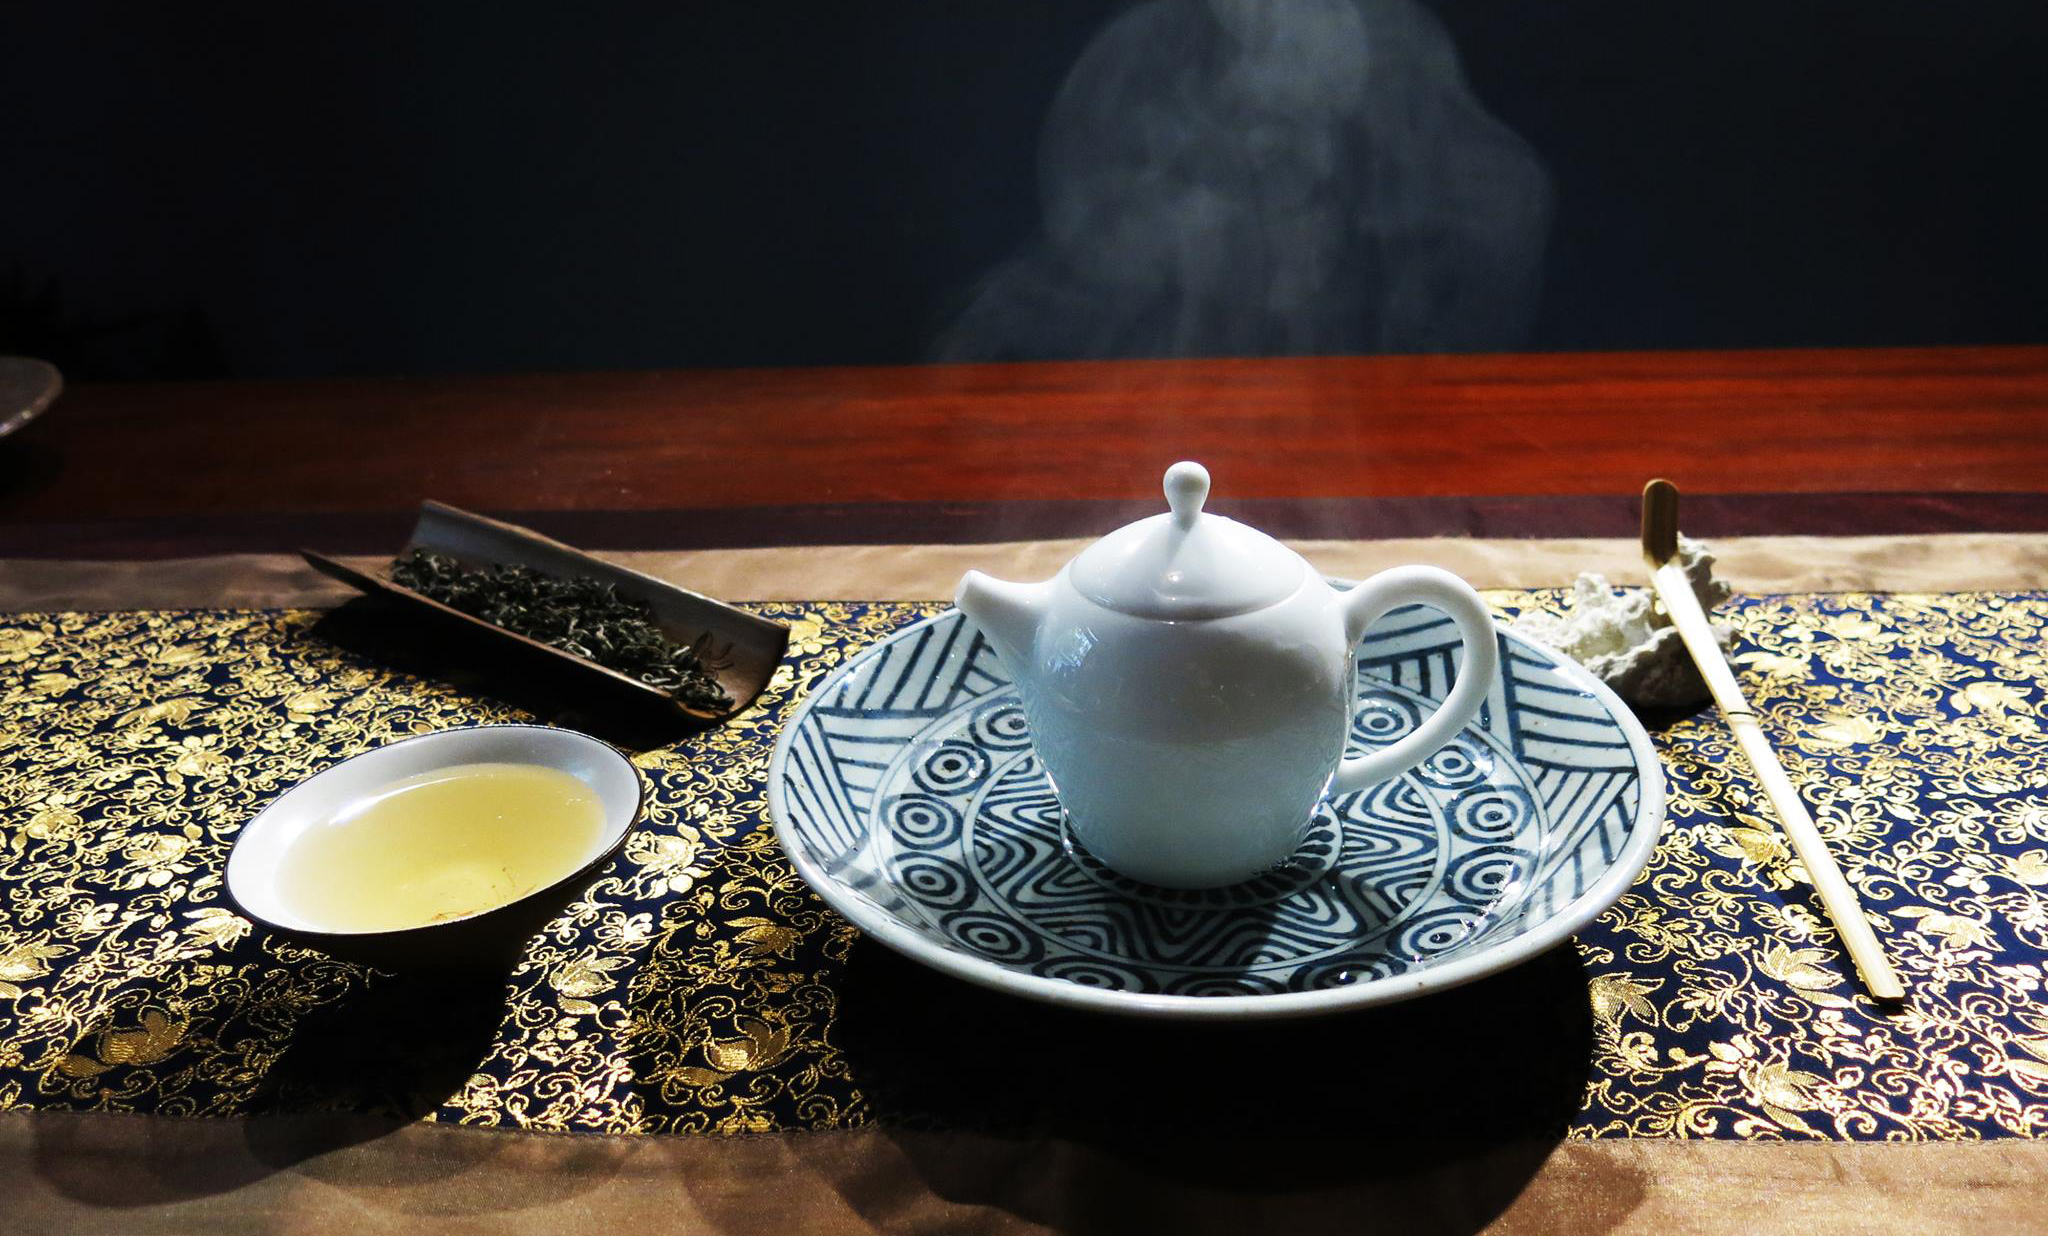 Việt Hùng đang nỗ lực để tạo ra dòng trà thượng phẩm Việt. (Ảnh nhân vật cung cấp)